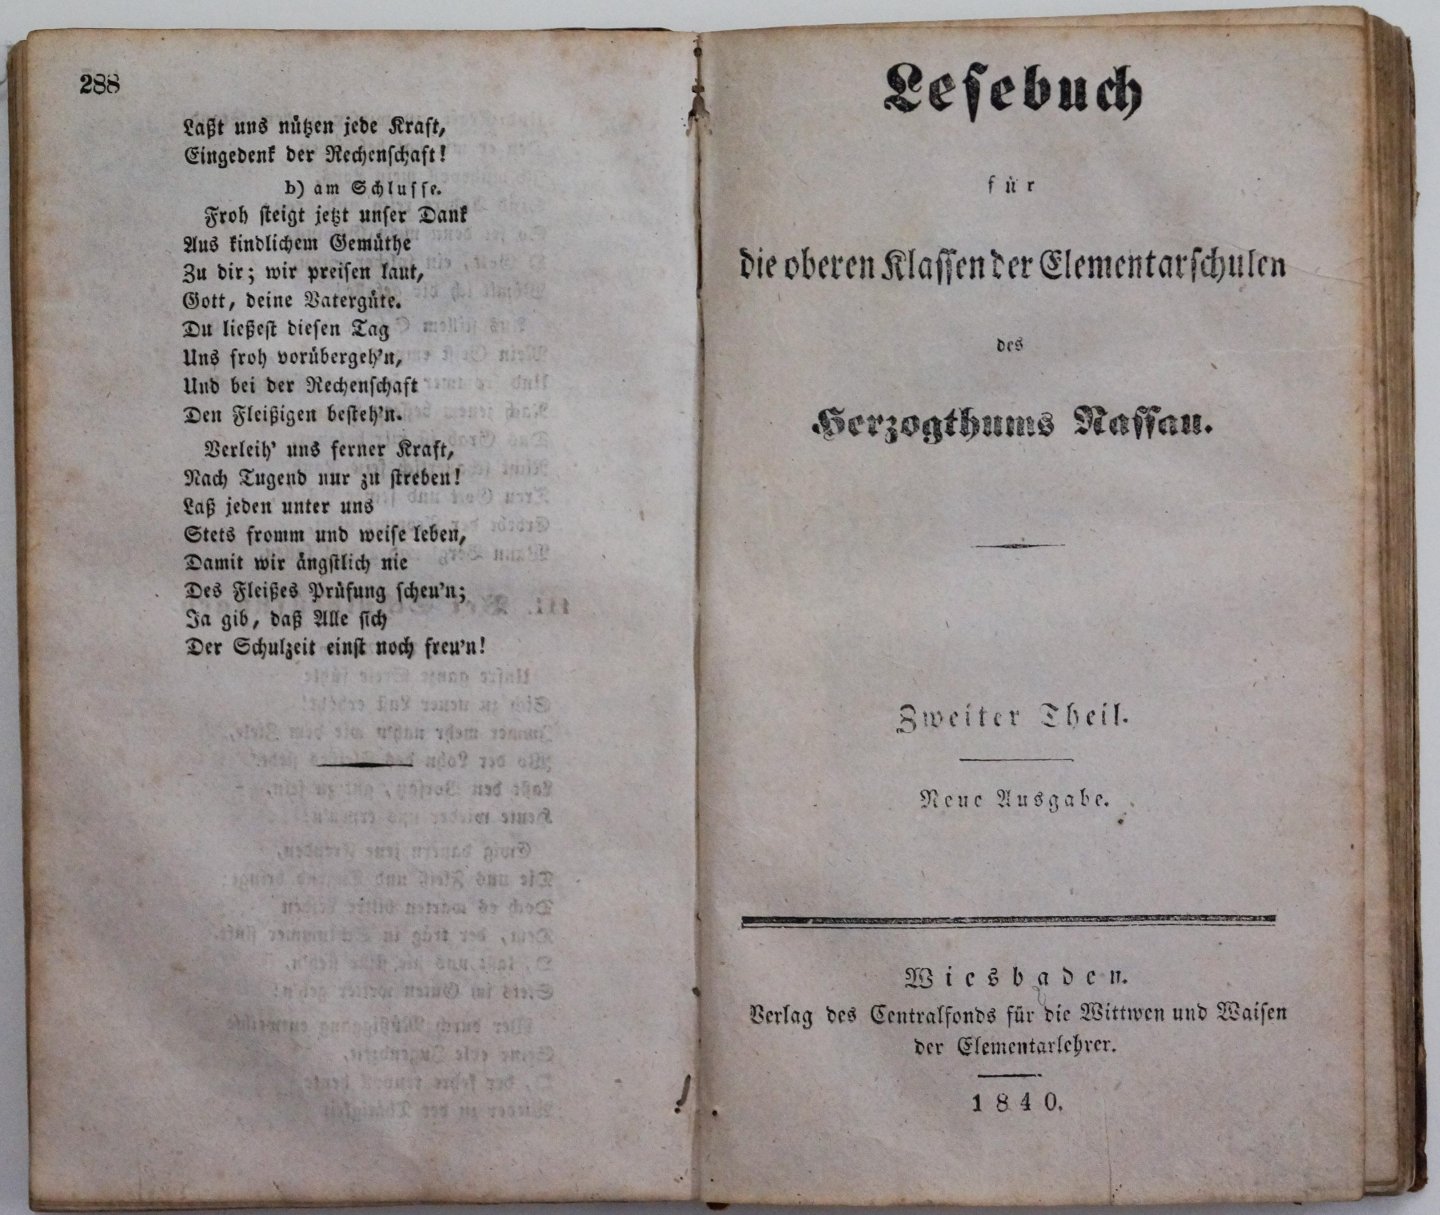 N/A - Lesebuch für die oberen Klassen der Elementarschulen des Herzogthums Nassau. Neue Ausgabe. 2 parts in one volume.